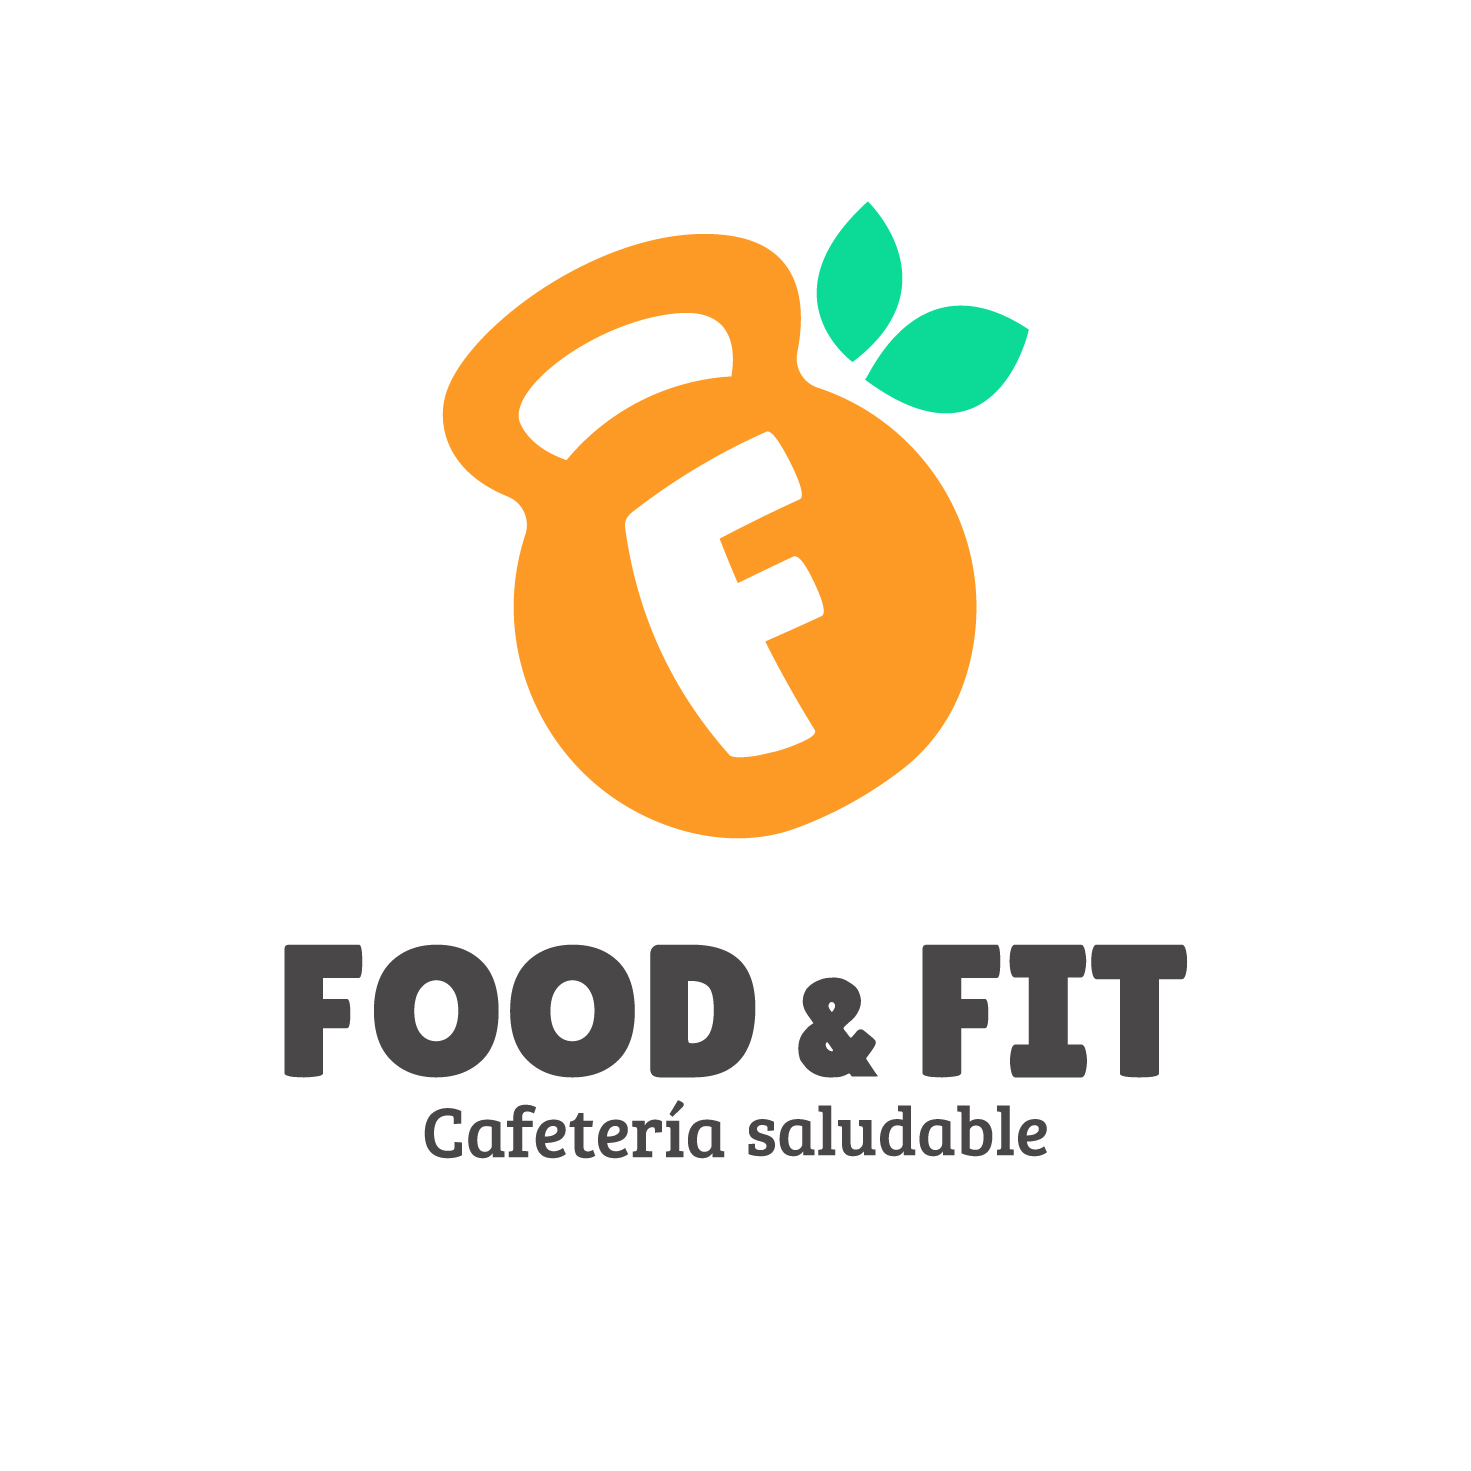 Food & Fit